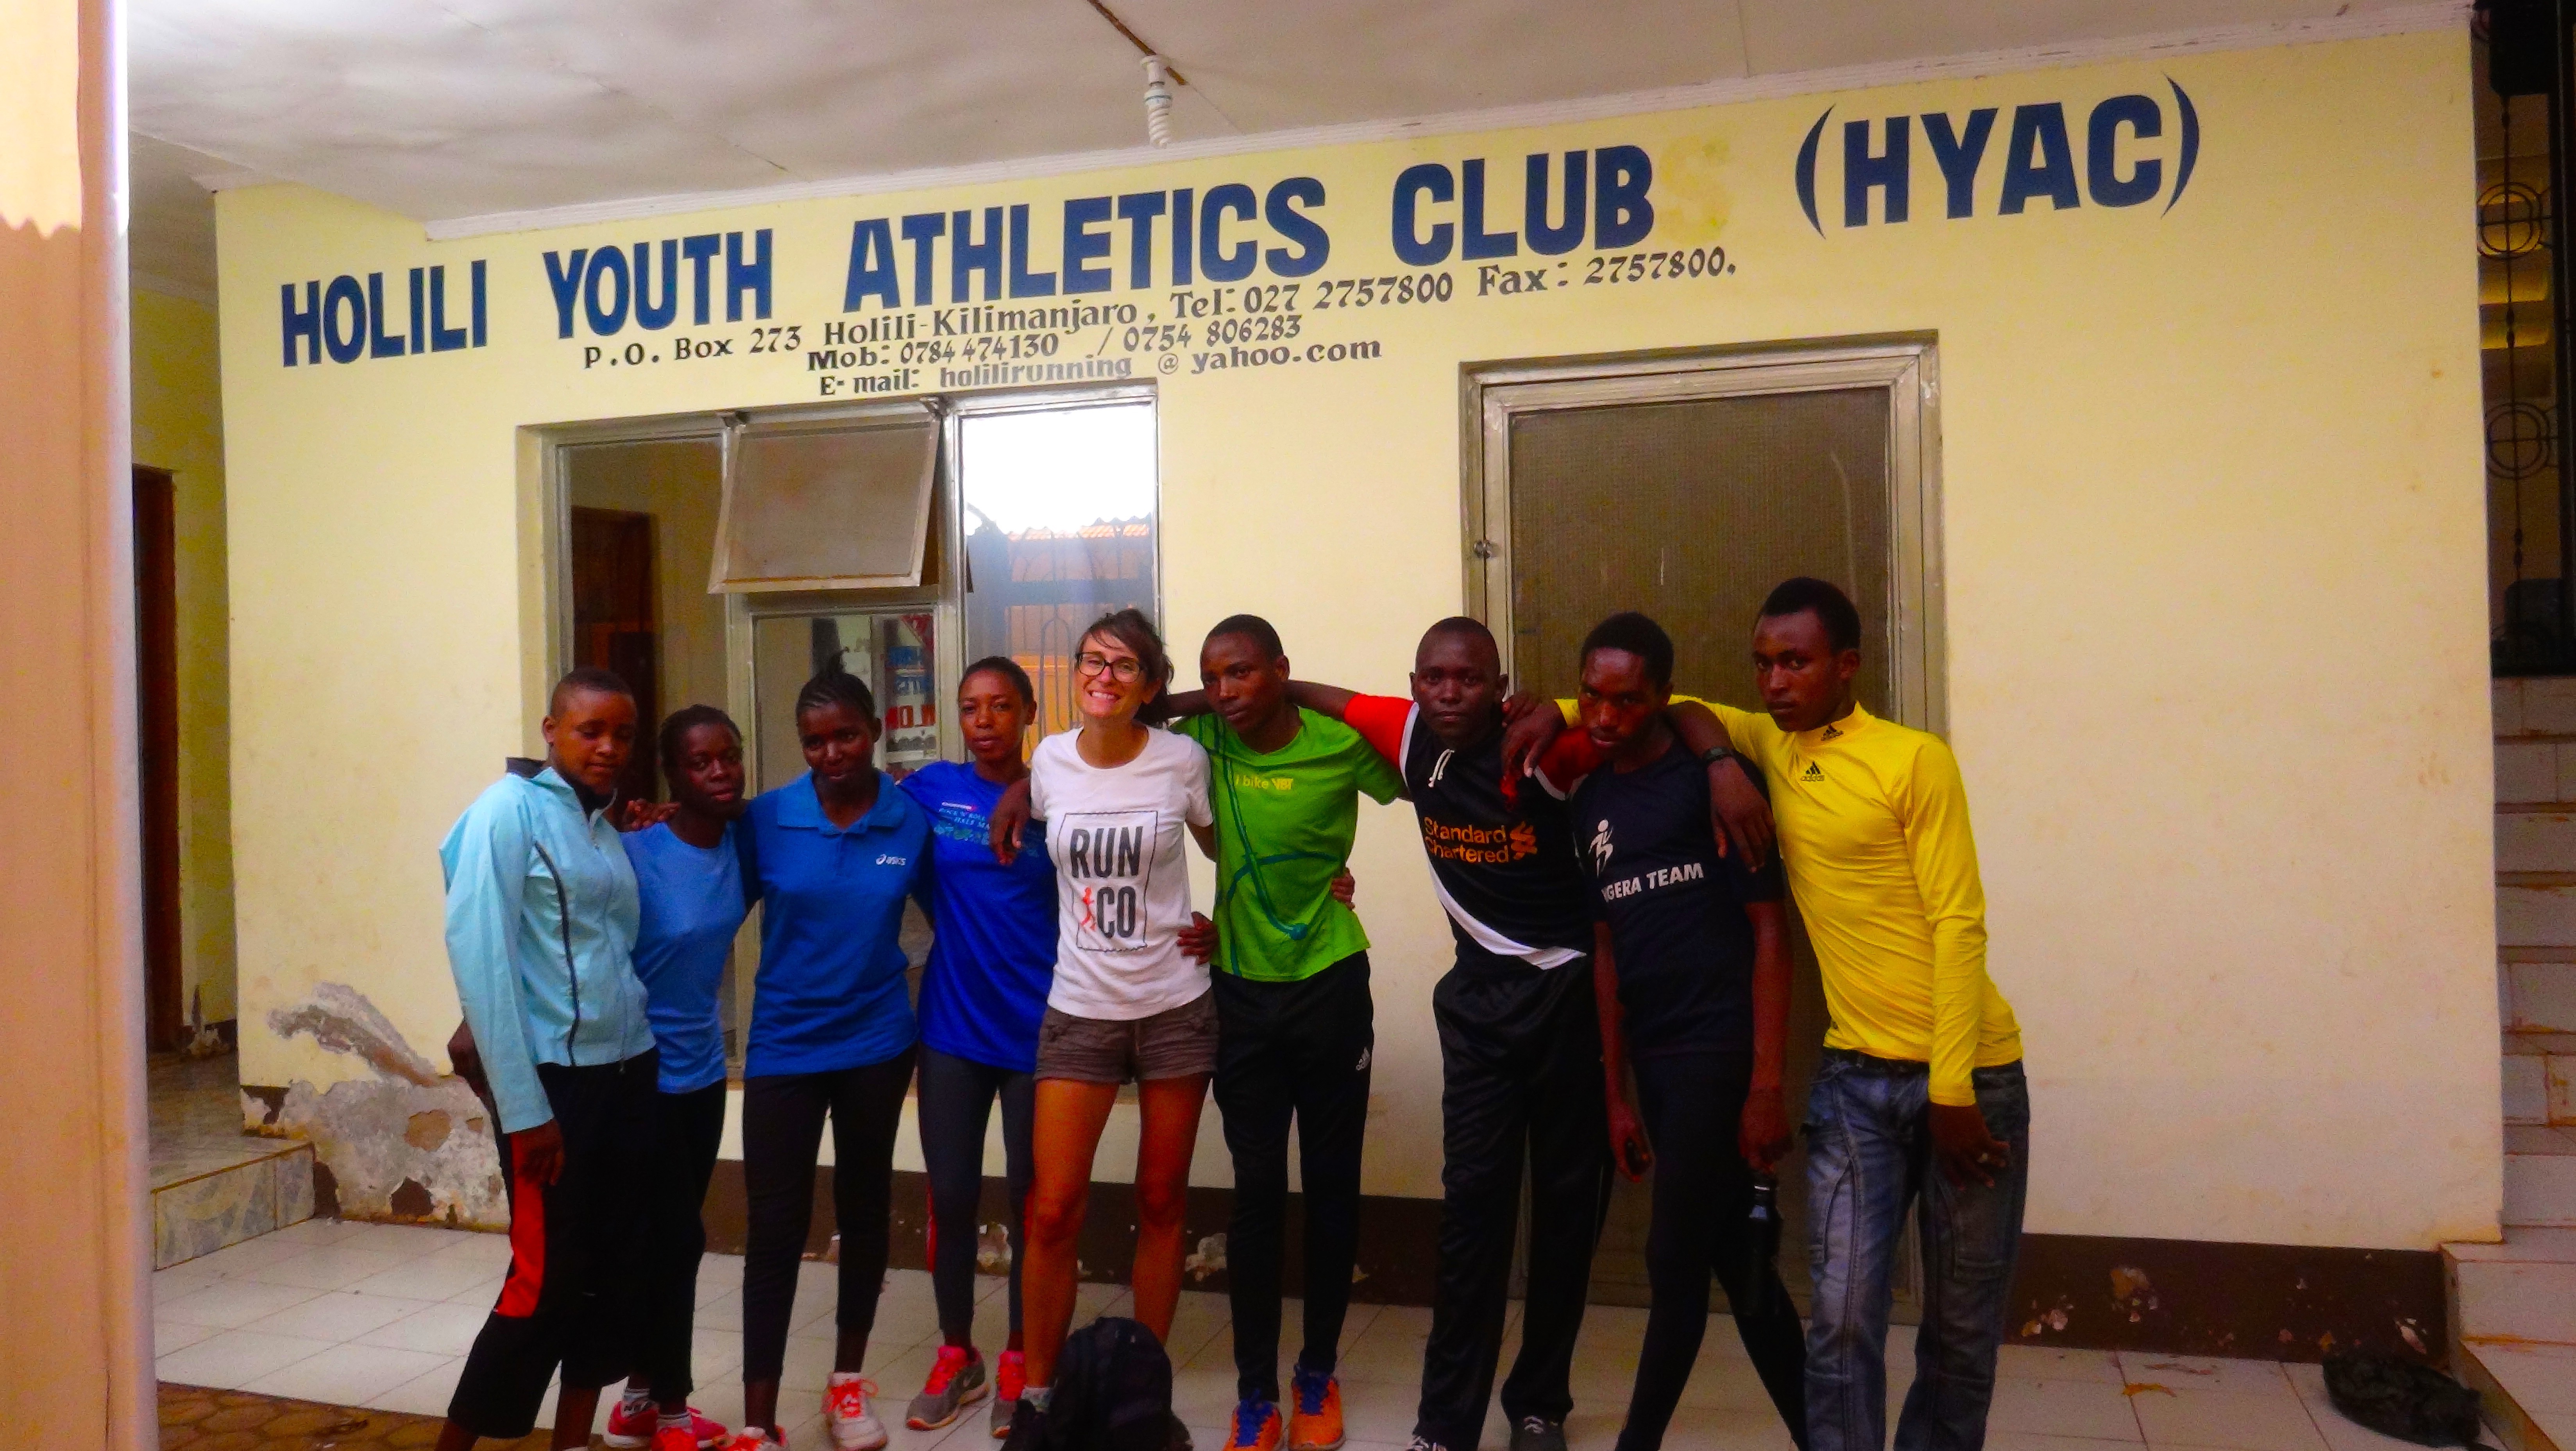 Holili Youth Athletic Club